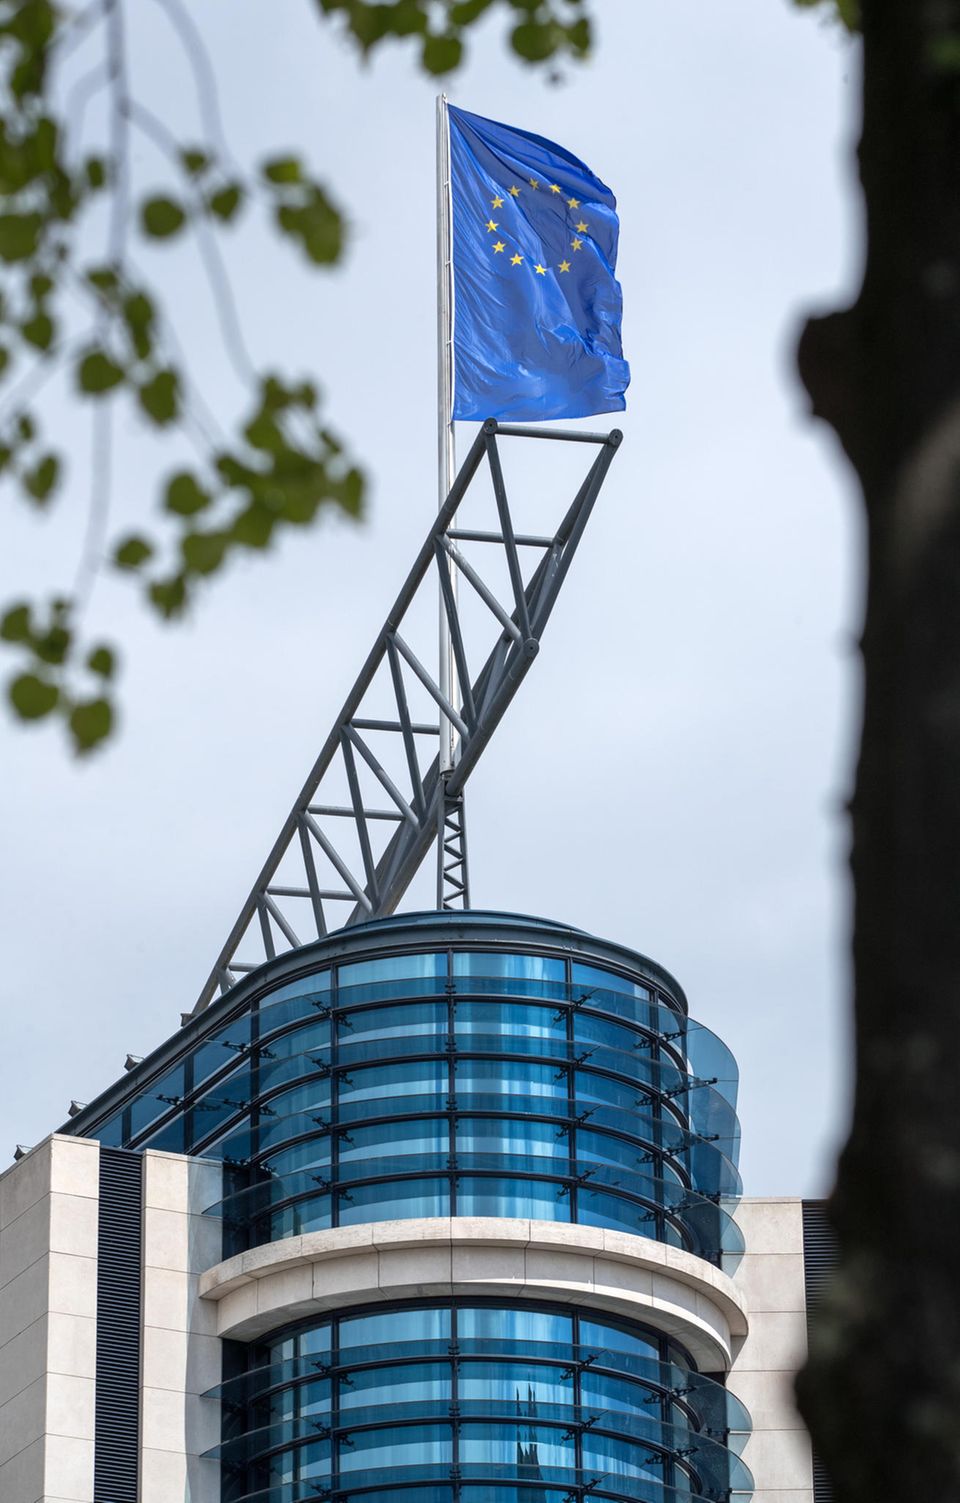 Die EU-Flagge auf dem Dach der SPD-Parteizentrale